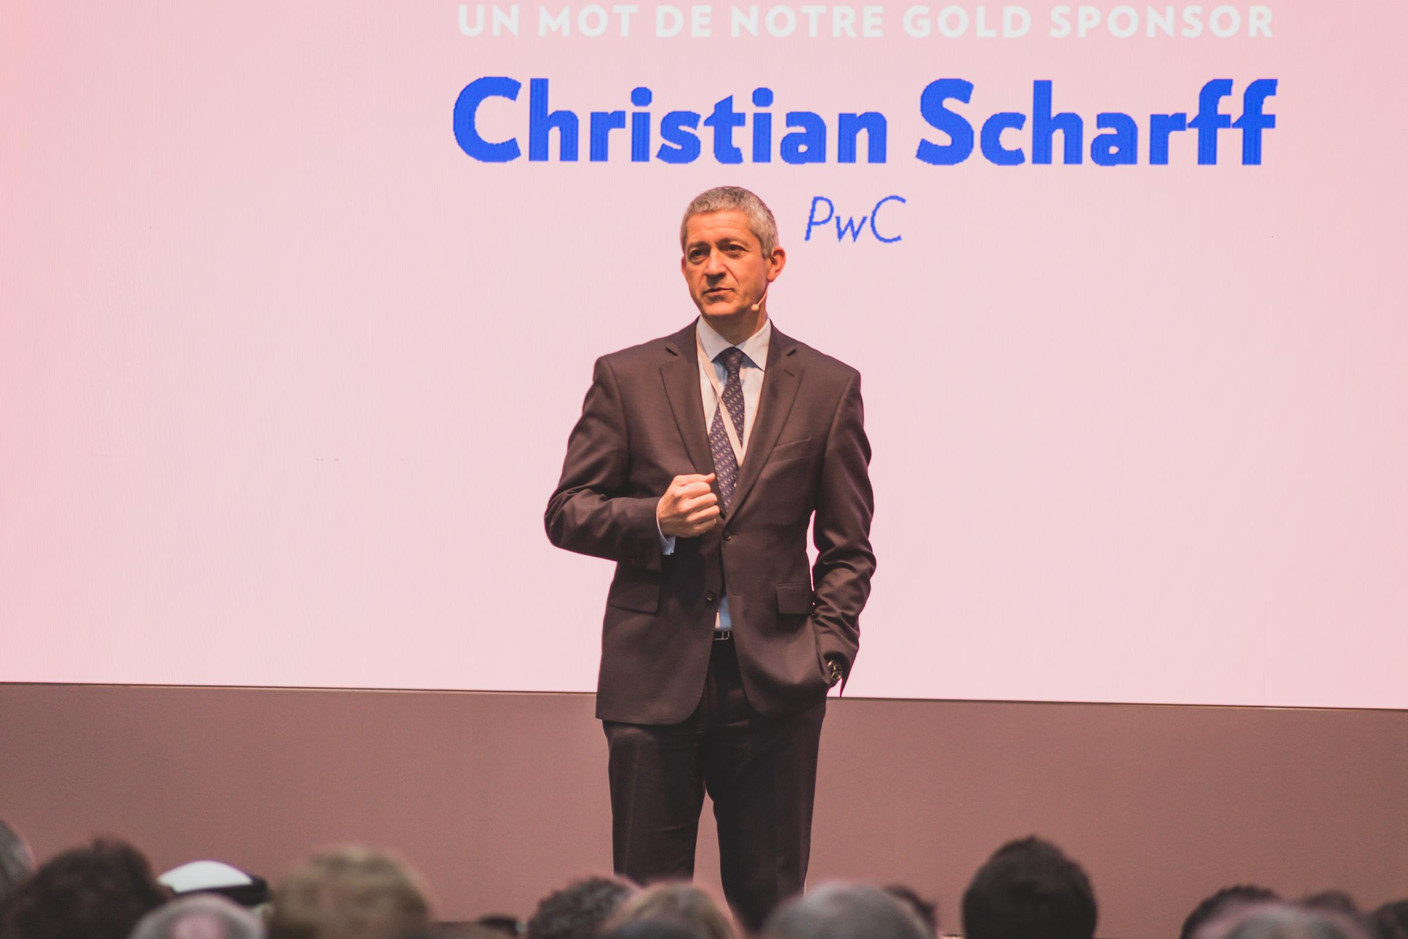 Christian Scharff (PwC) (Photo: Lucie von Lucilin)